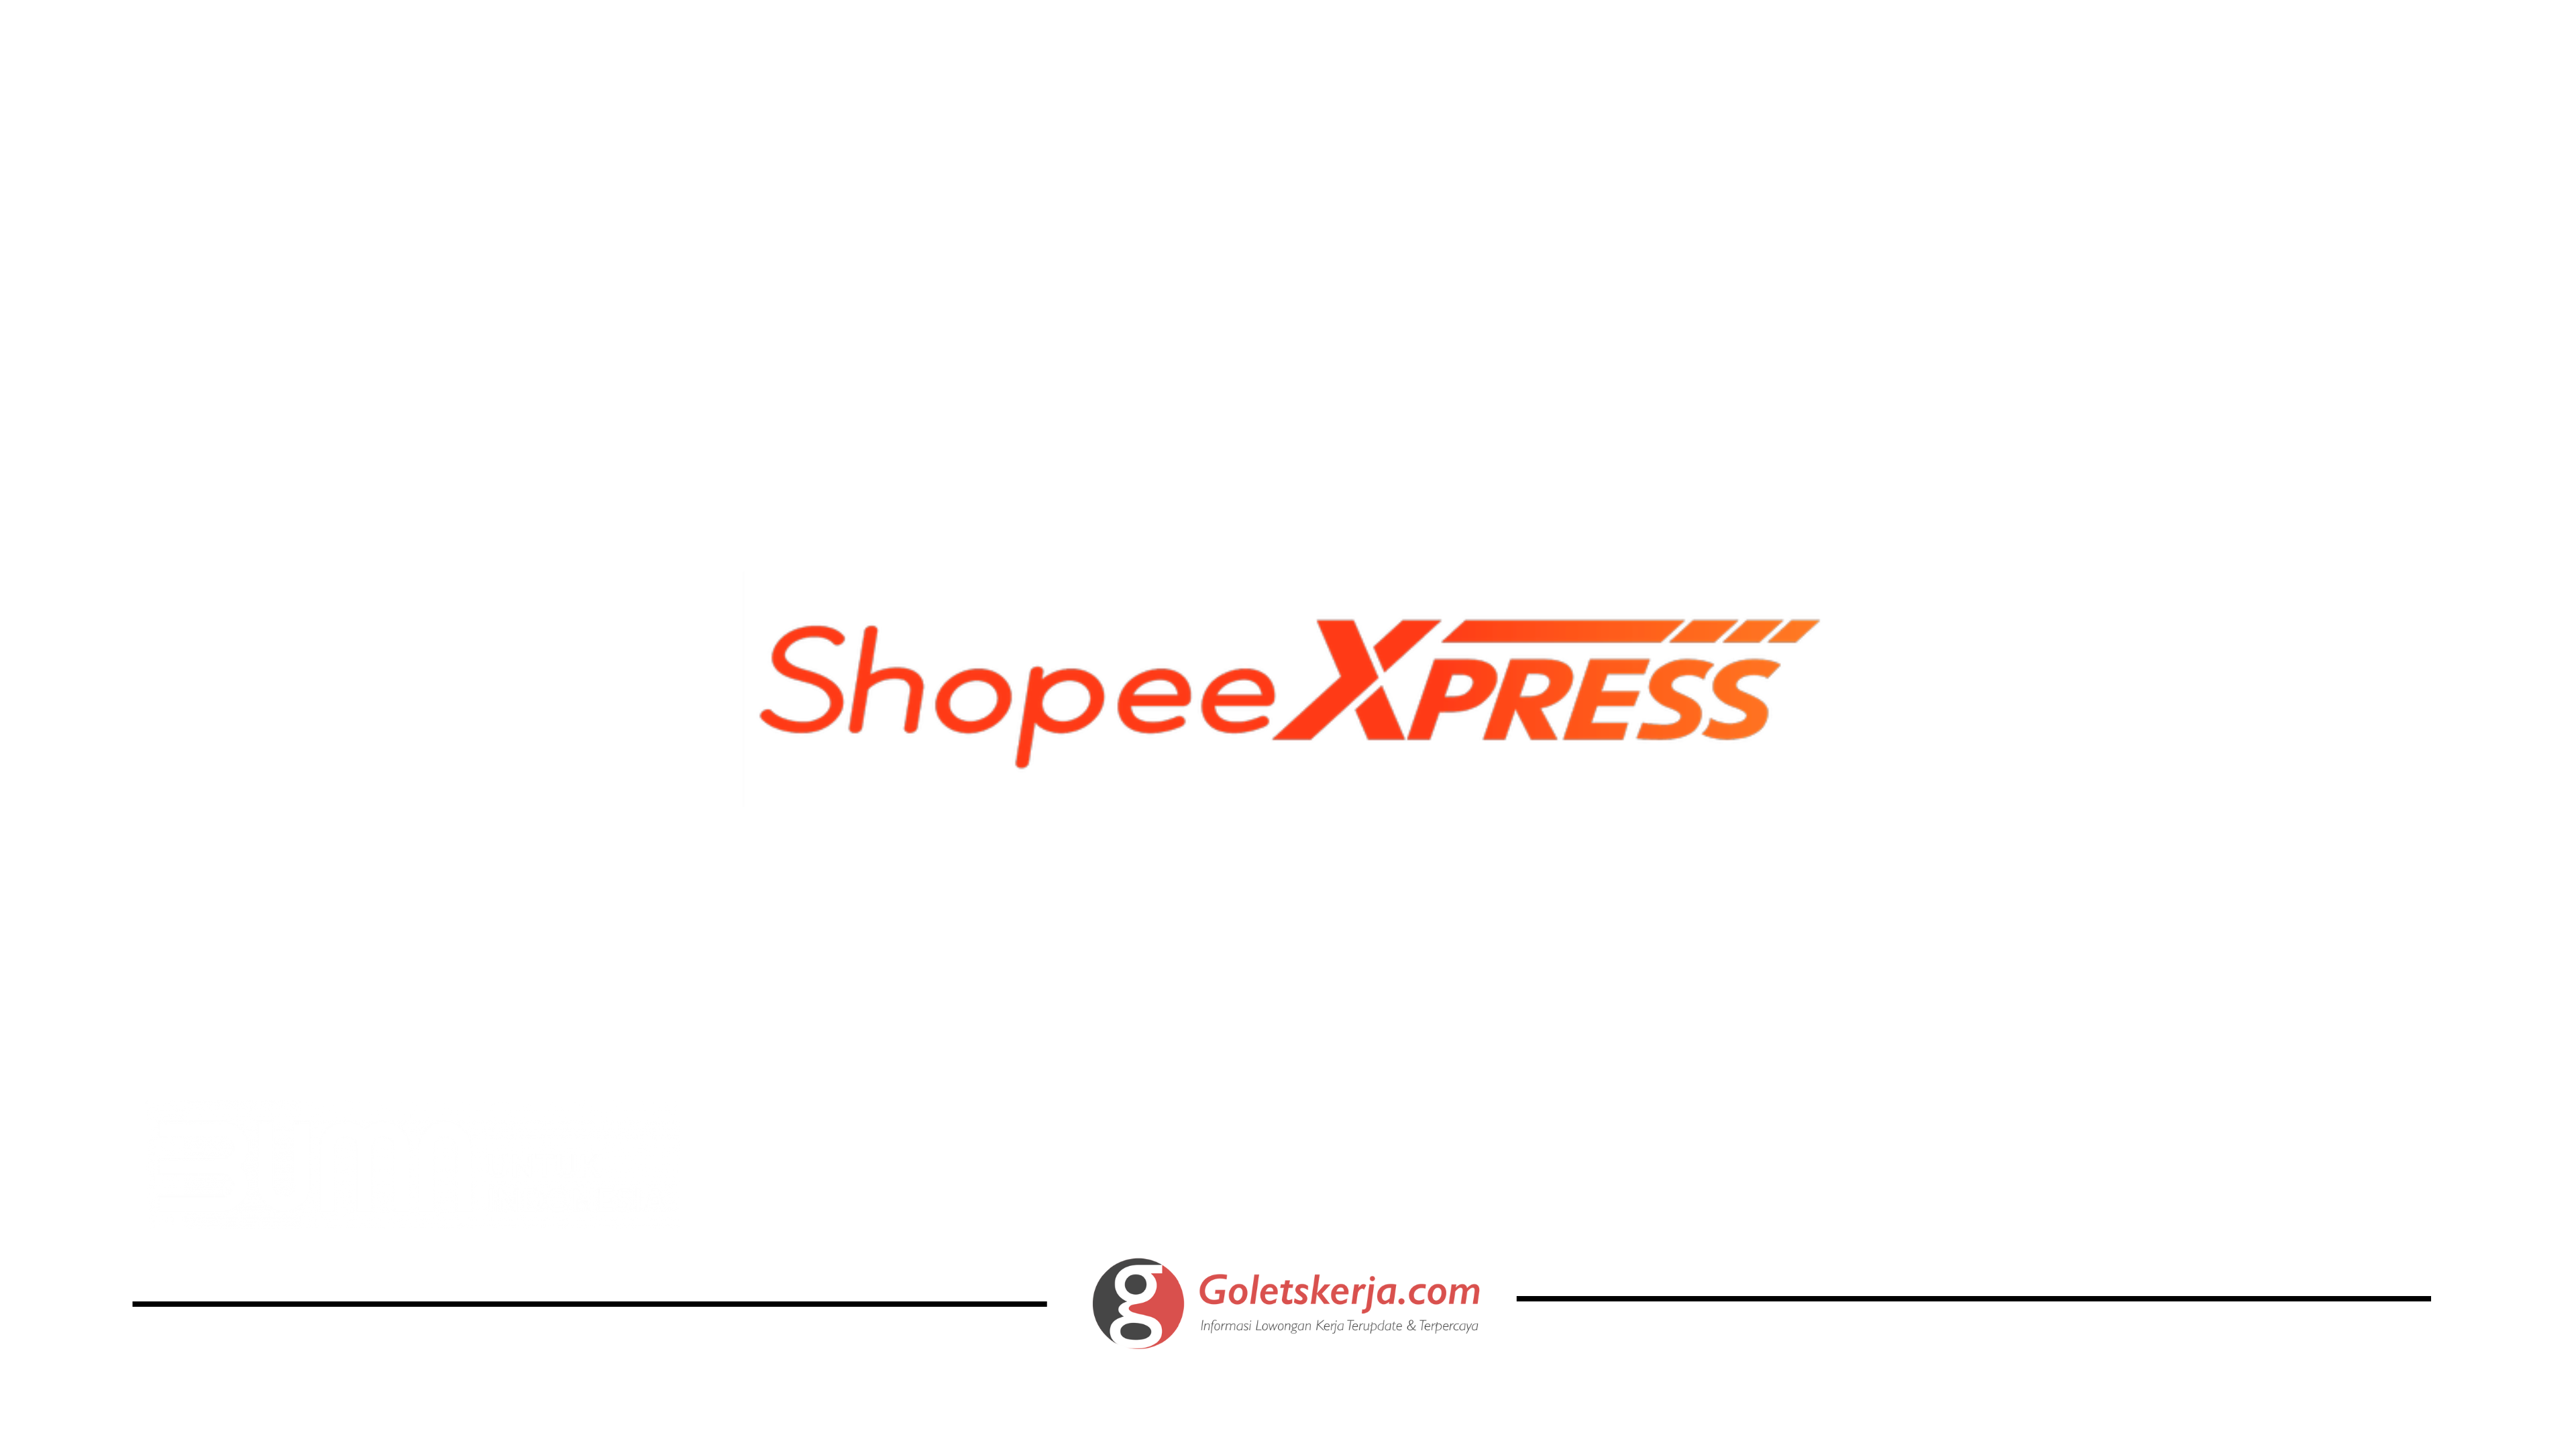 lowongan-kerja-shopee-express-goletskerja